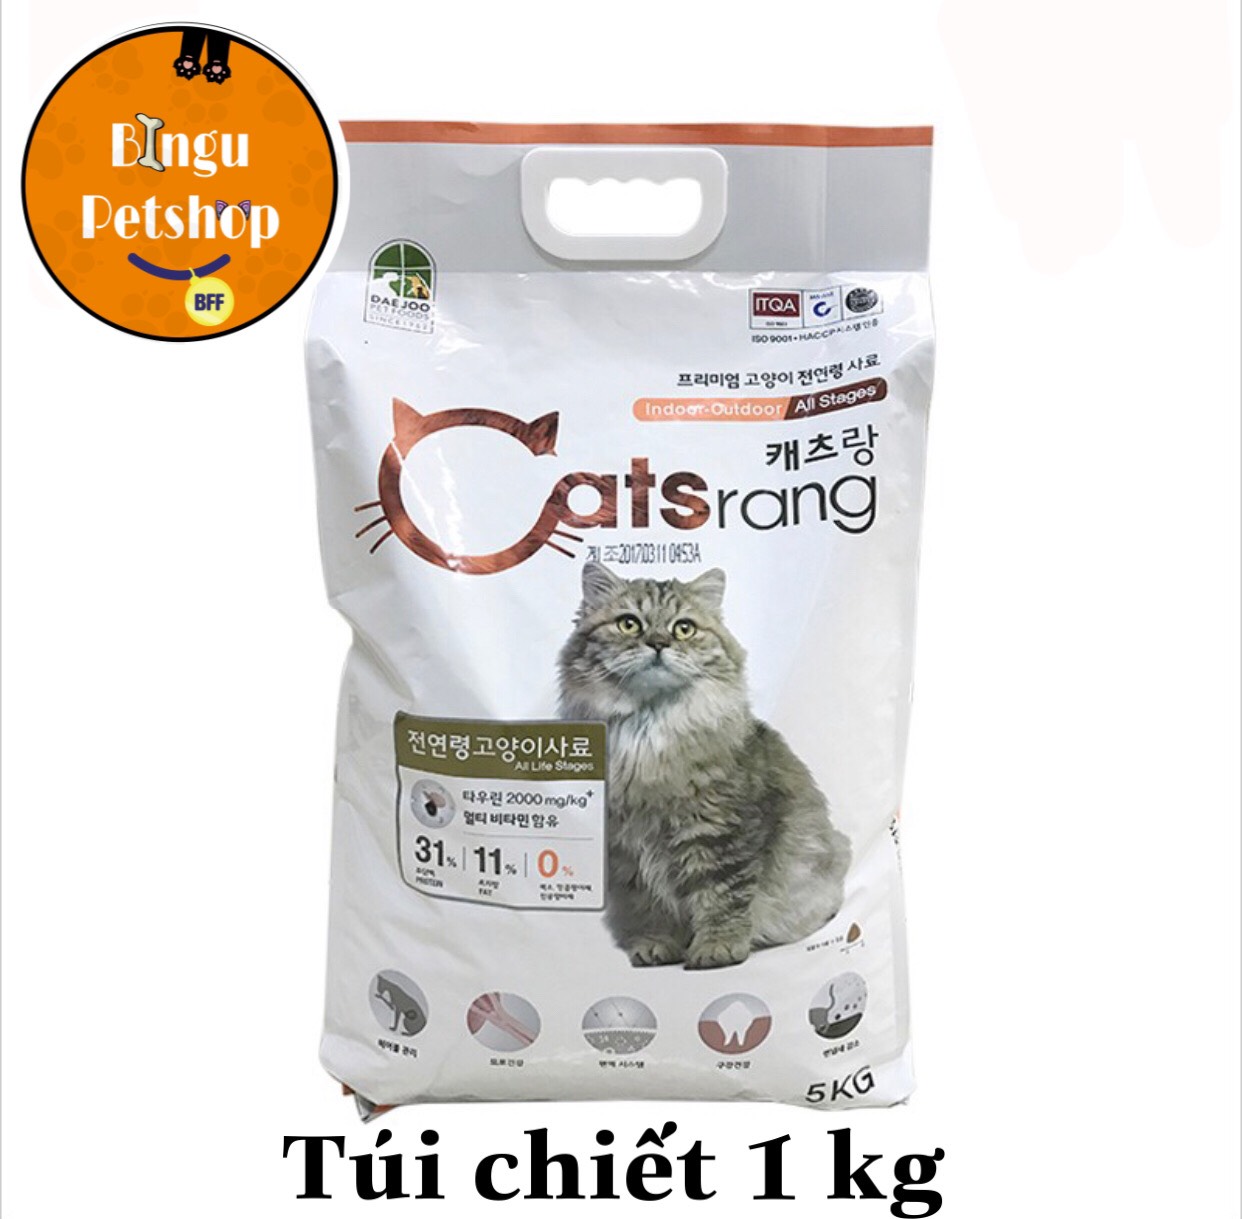 Thức ăn hạt cho mèo mọi lứa tuổi 1kg & 500GR Catsrang